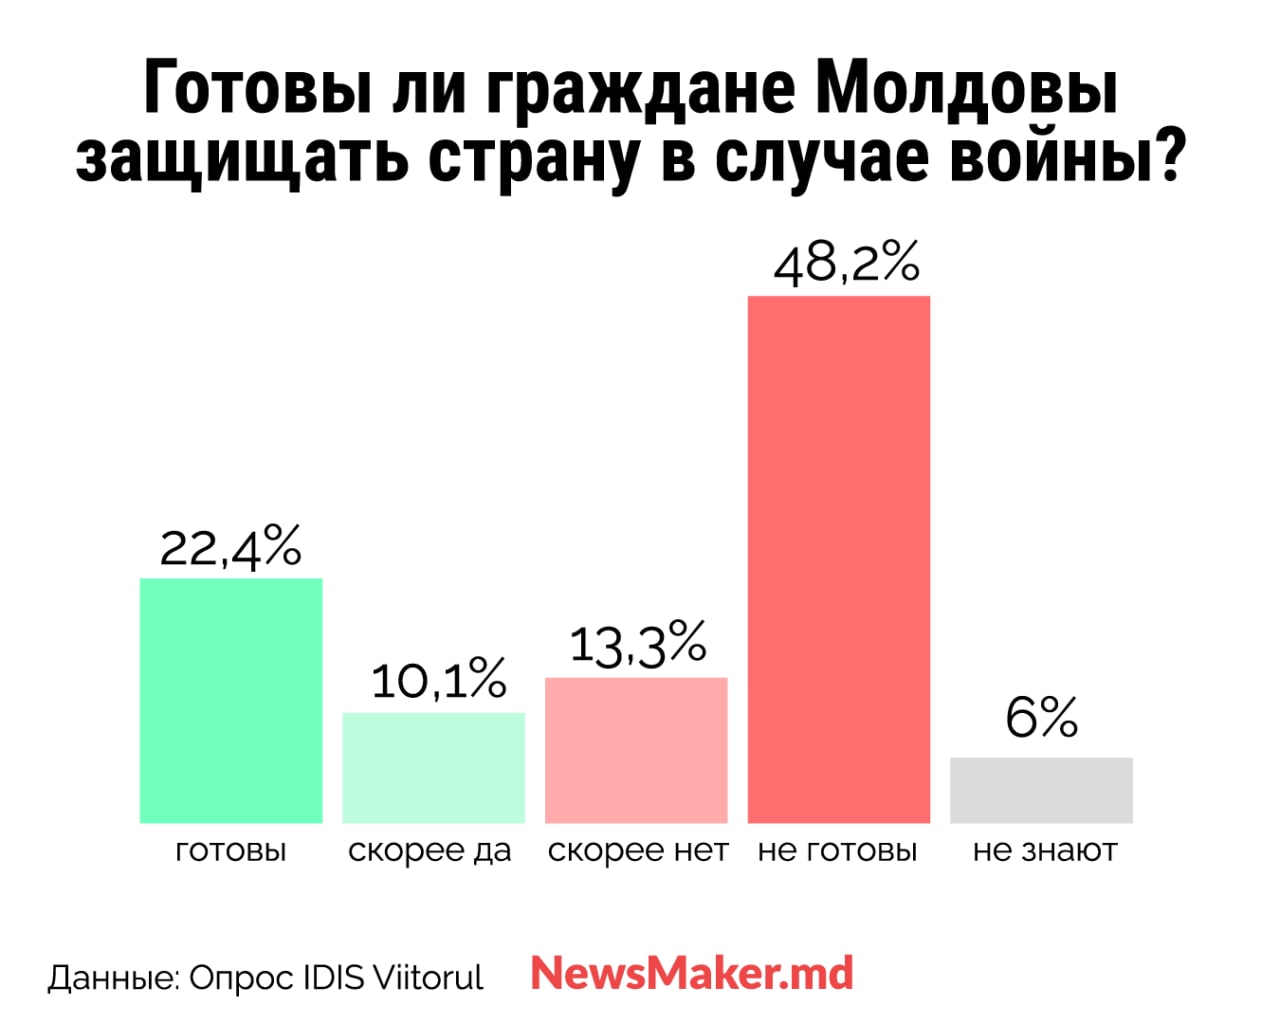 NM Espresso: о «пятой колонне», политиках, которым мы доверяем, и о «серьезном сигнале для безопасности Приднестровья»